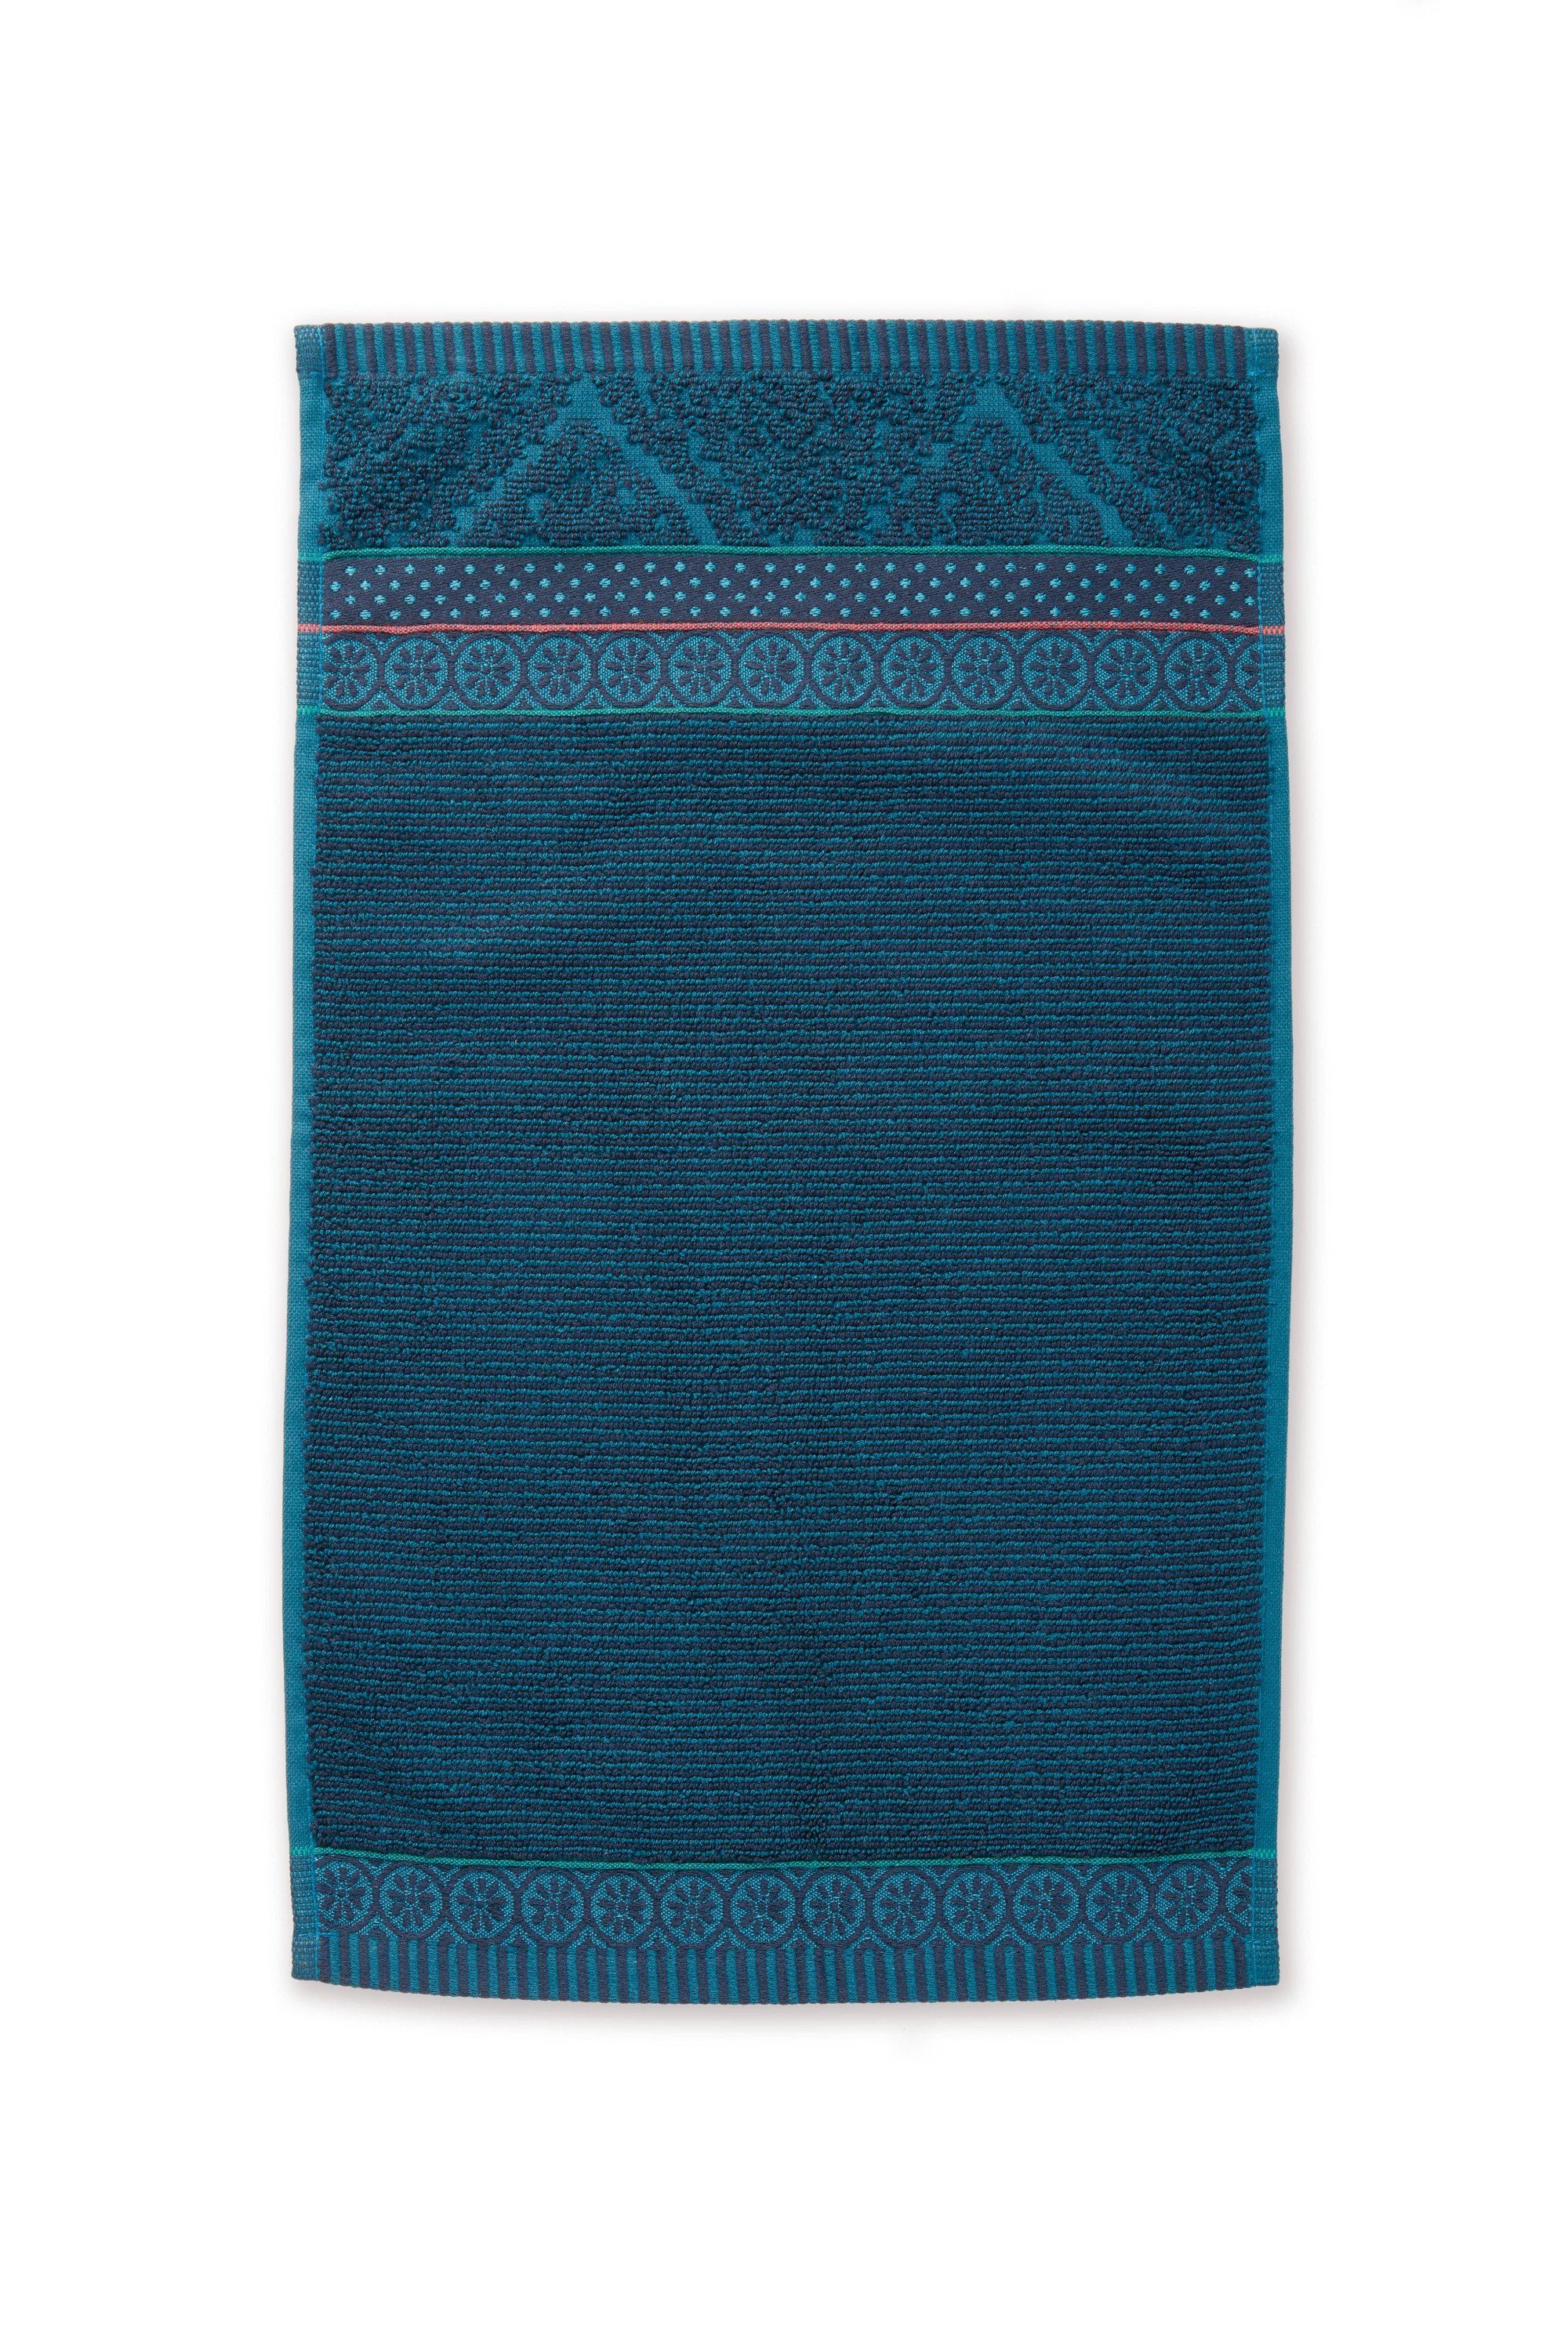 Handtuch ZELLIGE blue, Baumwolle, SOFT Waschhandschuh Pip Dunkelblau Duschtuch, PiP Studio Handtuch rechteckig Dark Gästetuch